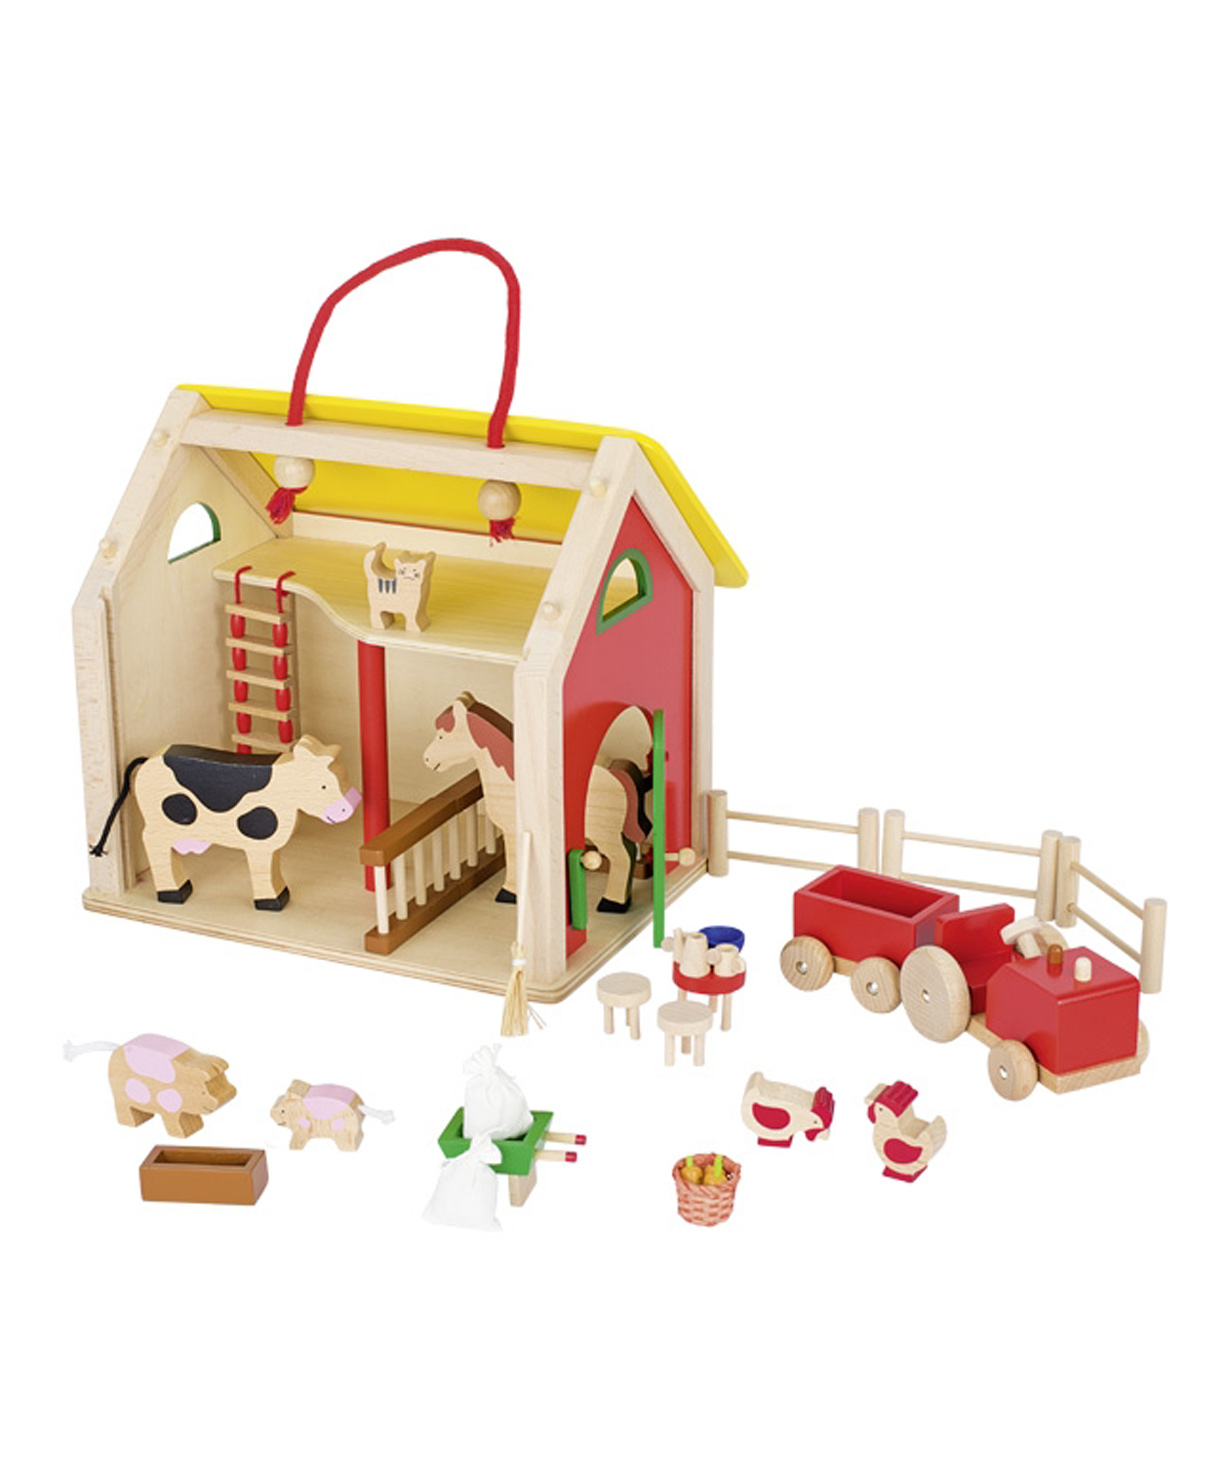 Խաղալիք «Goki Toys» ճամպրուկ տուն աքսեսուարներով